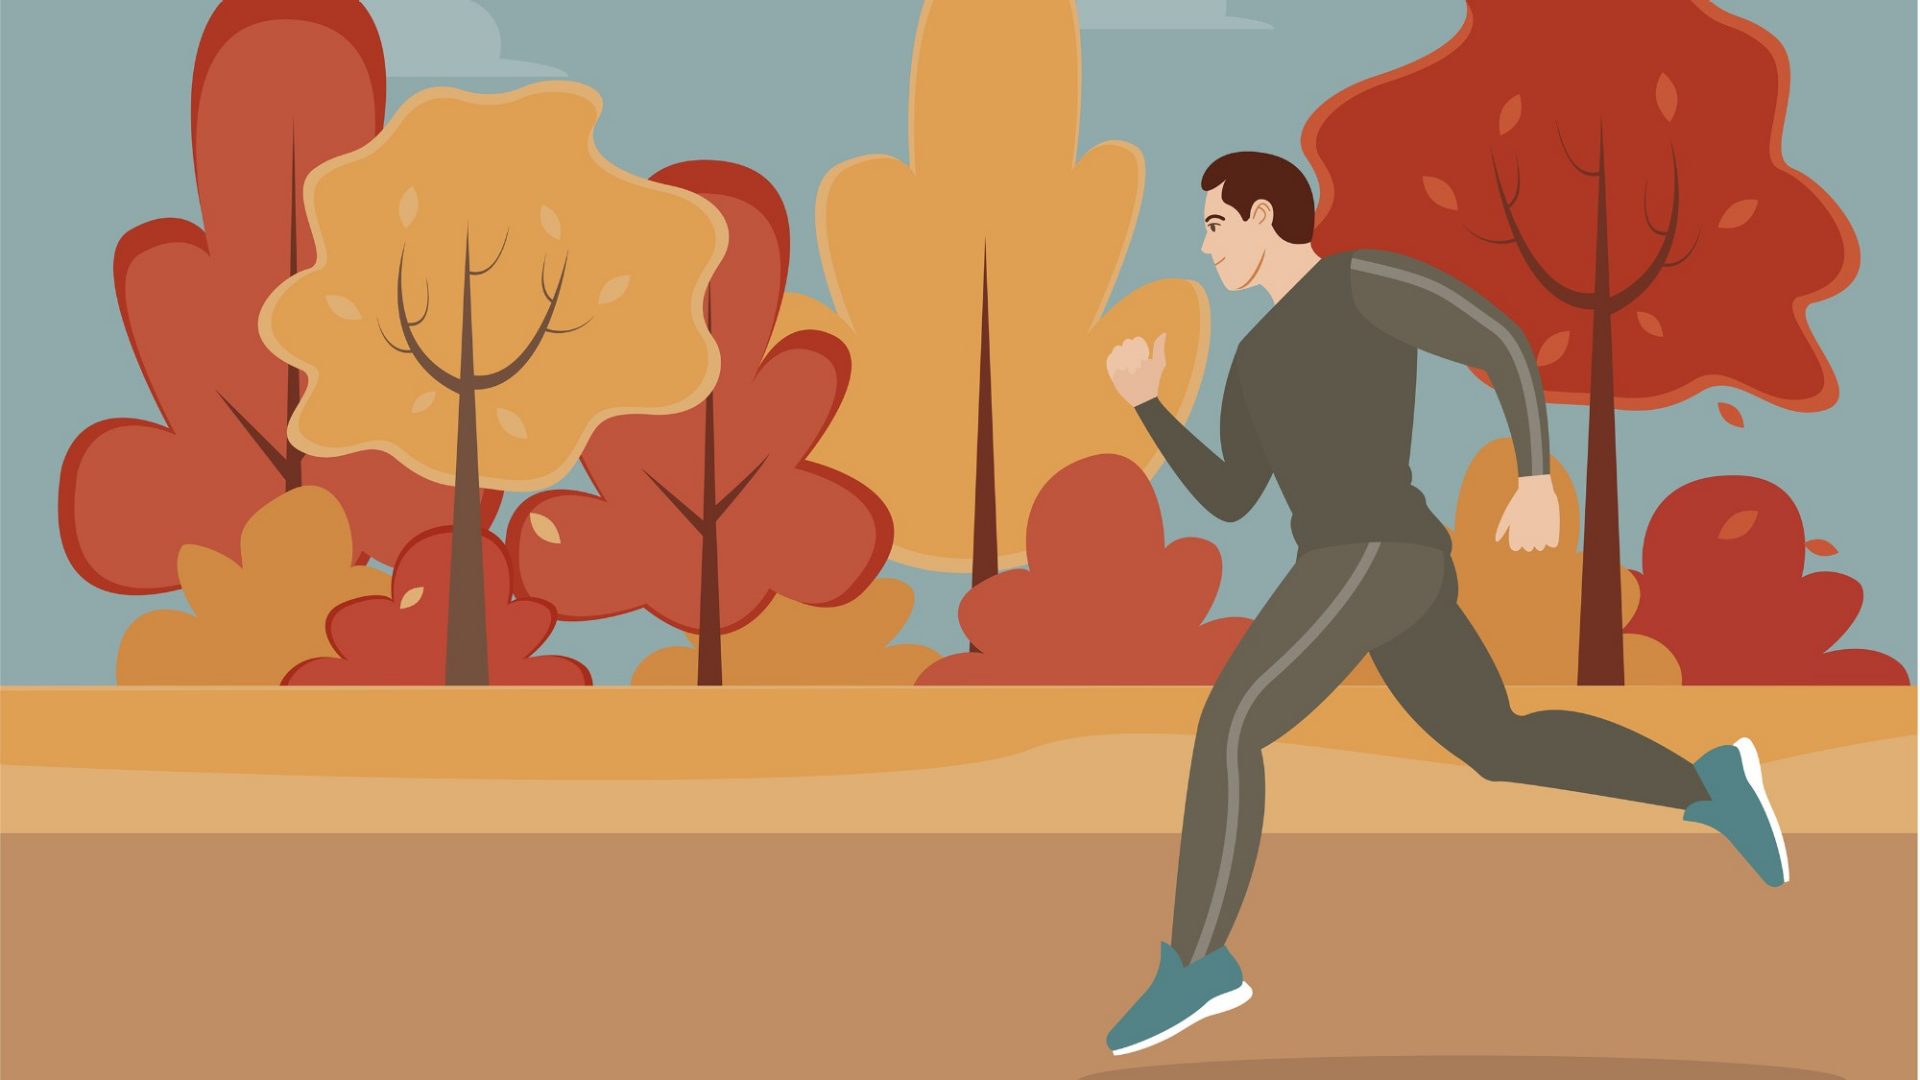 Laufen an der frischen Herbstluft ist gut für Seele und Körper. Je kälter es wird, umso wichtiger ist das Aufwärmen. Philipp Orter zeigt wie's geht.